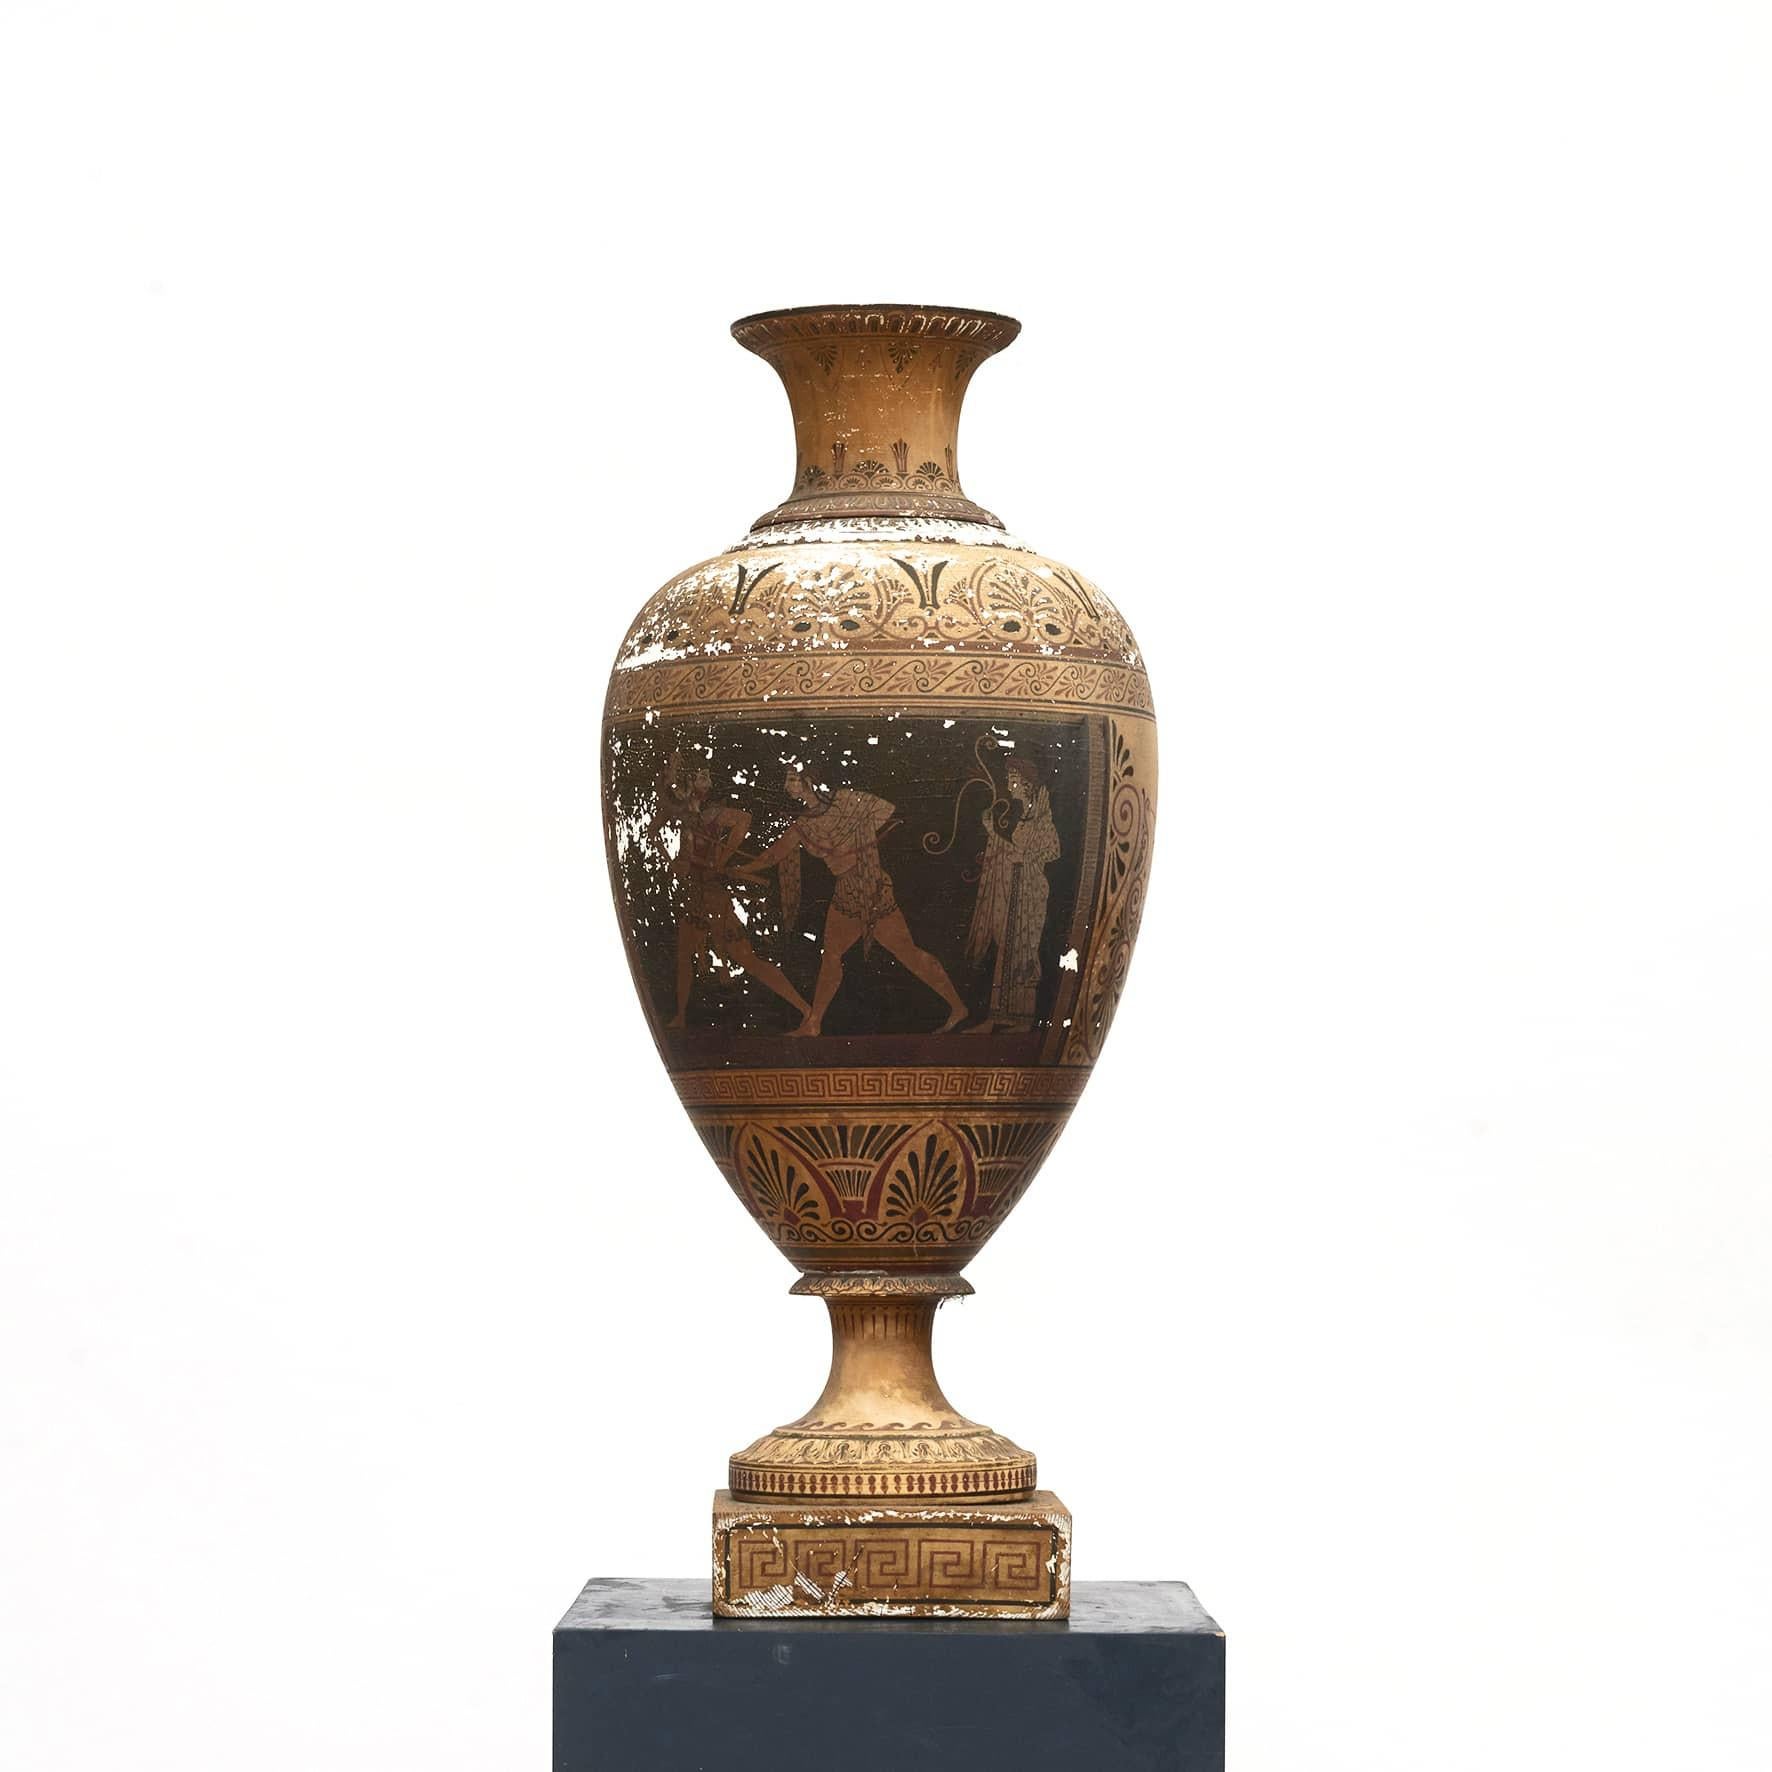 Seltene große klassizistische 'Grand Tour' Amphora in originalem, unberührtem Zustand.
Aus Terrakotta mit originalen polychromen etruskischen Malereien auf weißer Kreidegrundierung. Auf einem quadratischen Holzsockel.
Eine sehr dekorative und